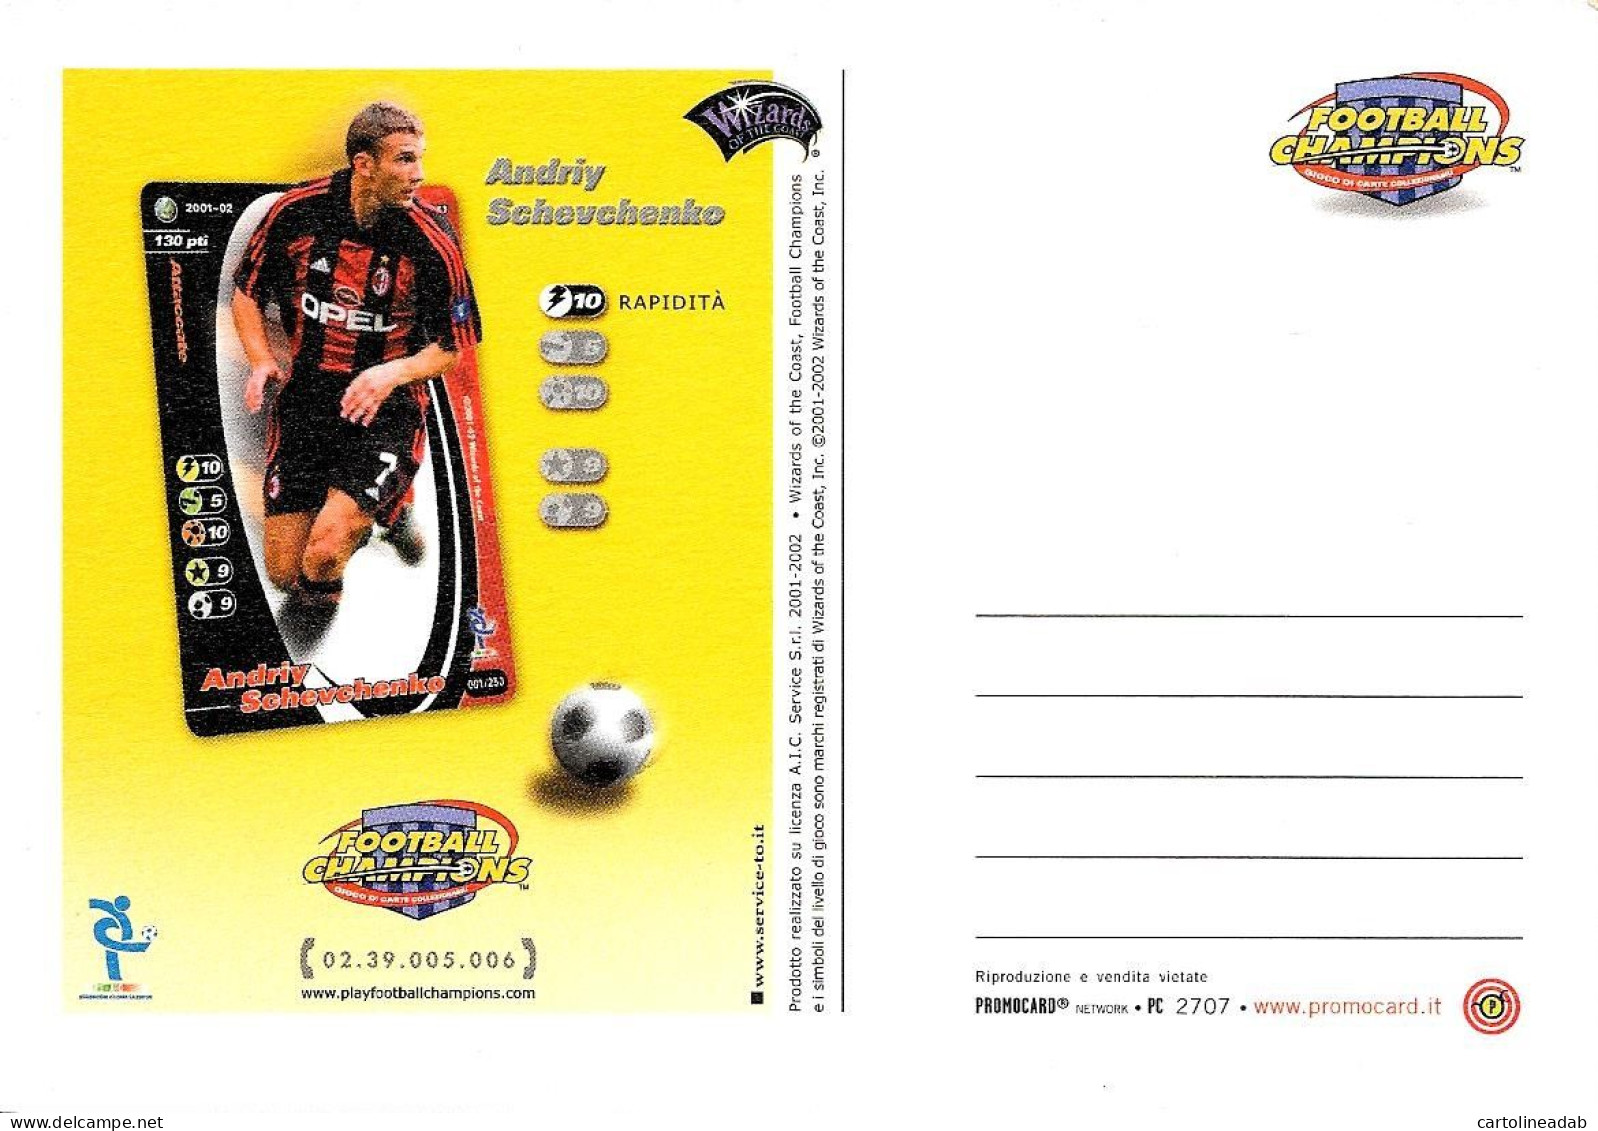 [MD9597] CPM - ANDRIY SCHEVCHENKO - FOOTBALL CHAMPIONS - PROMOCARD 2707 - PERFETTA - Non Viaggiata - Calcio